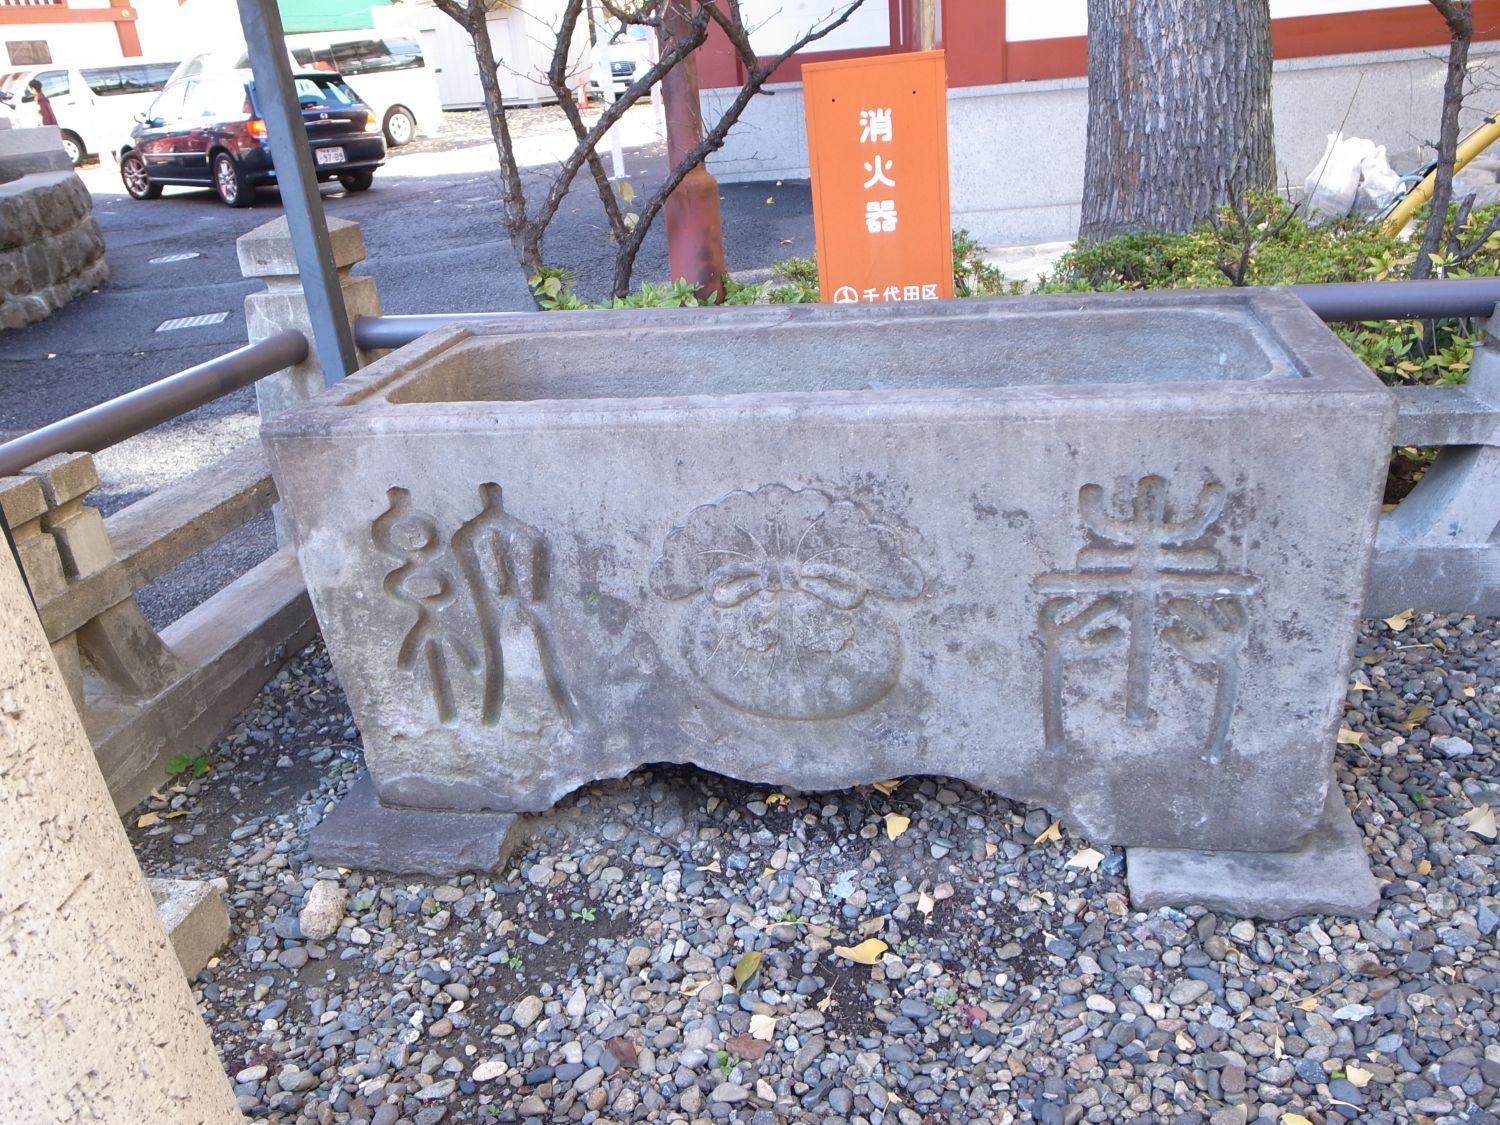  三宿稲荷神社 